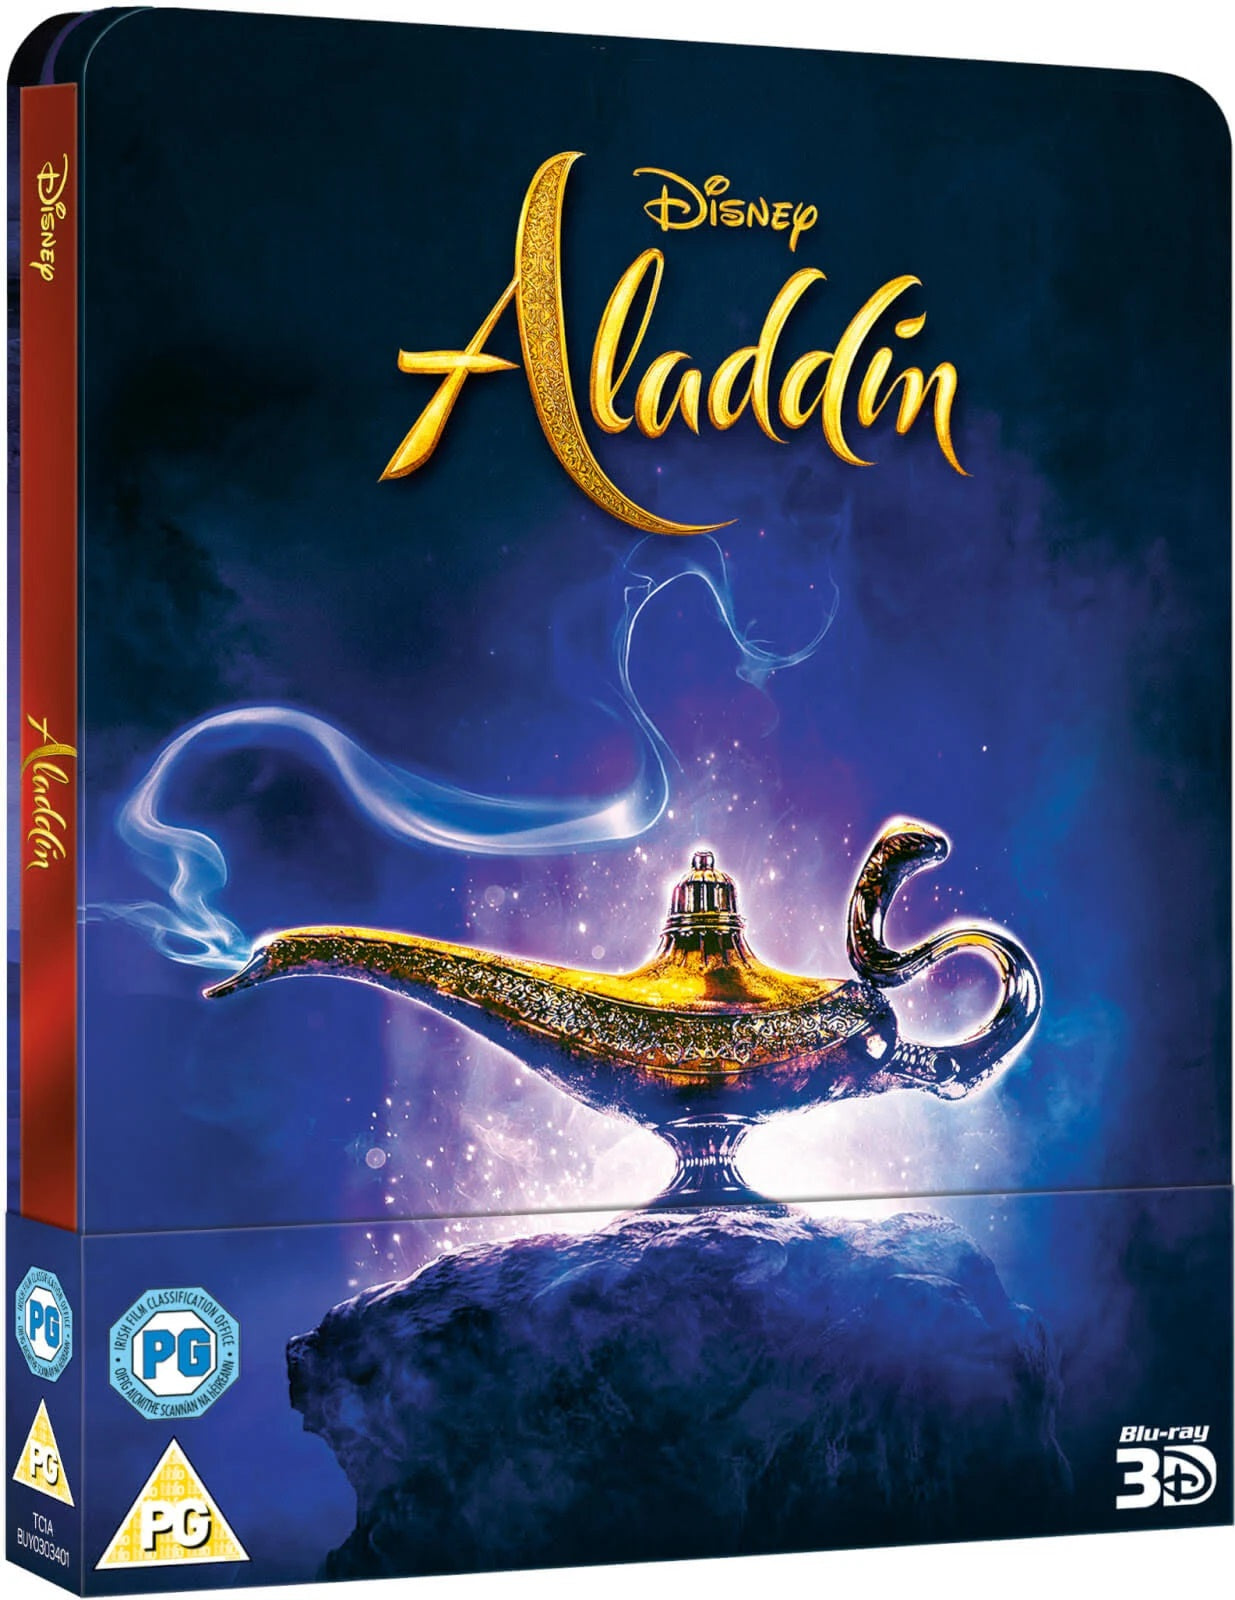 Disney's Aladdin (2019) [Exclusive Zavvi 3D & 2D Blu-ray Steelbook]